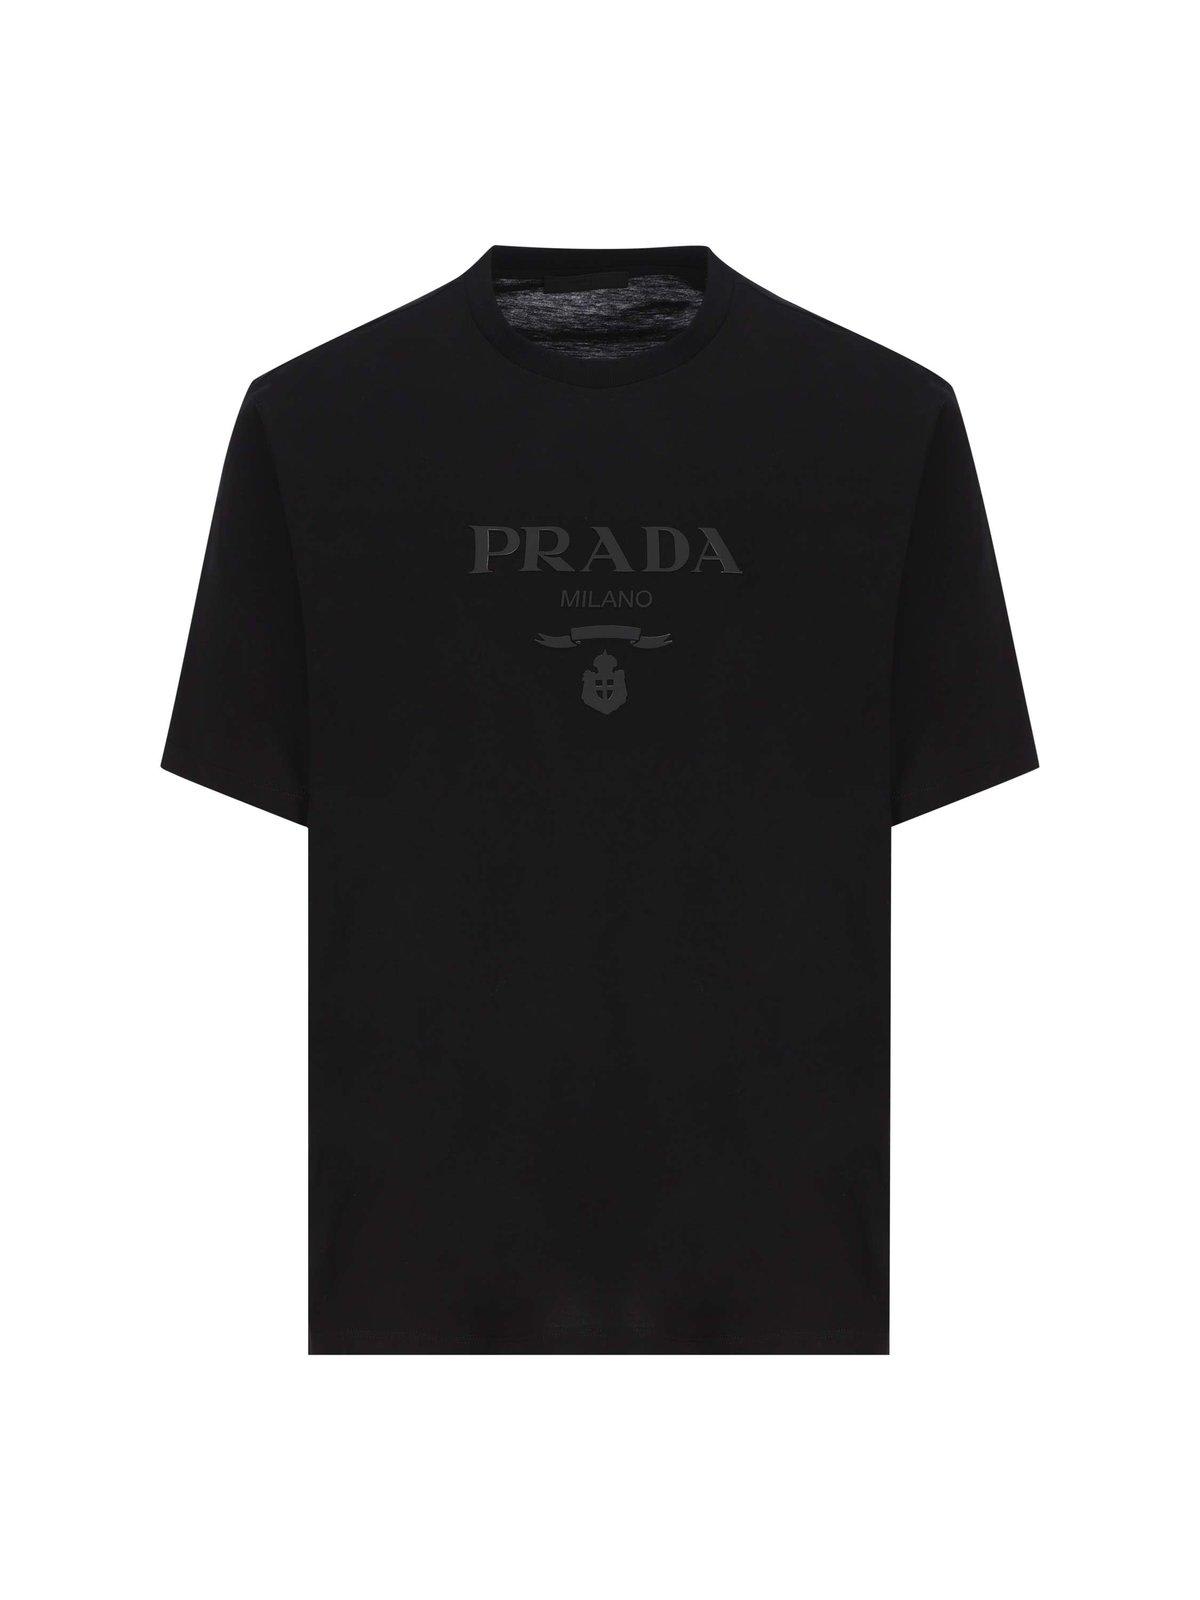 Prada Logo Printed Short-sleeved T-shirt